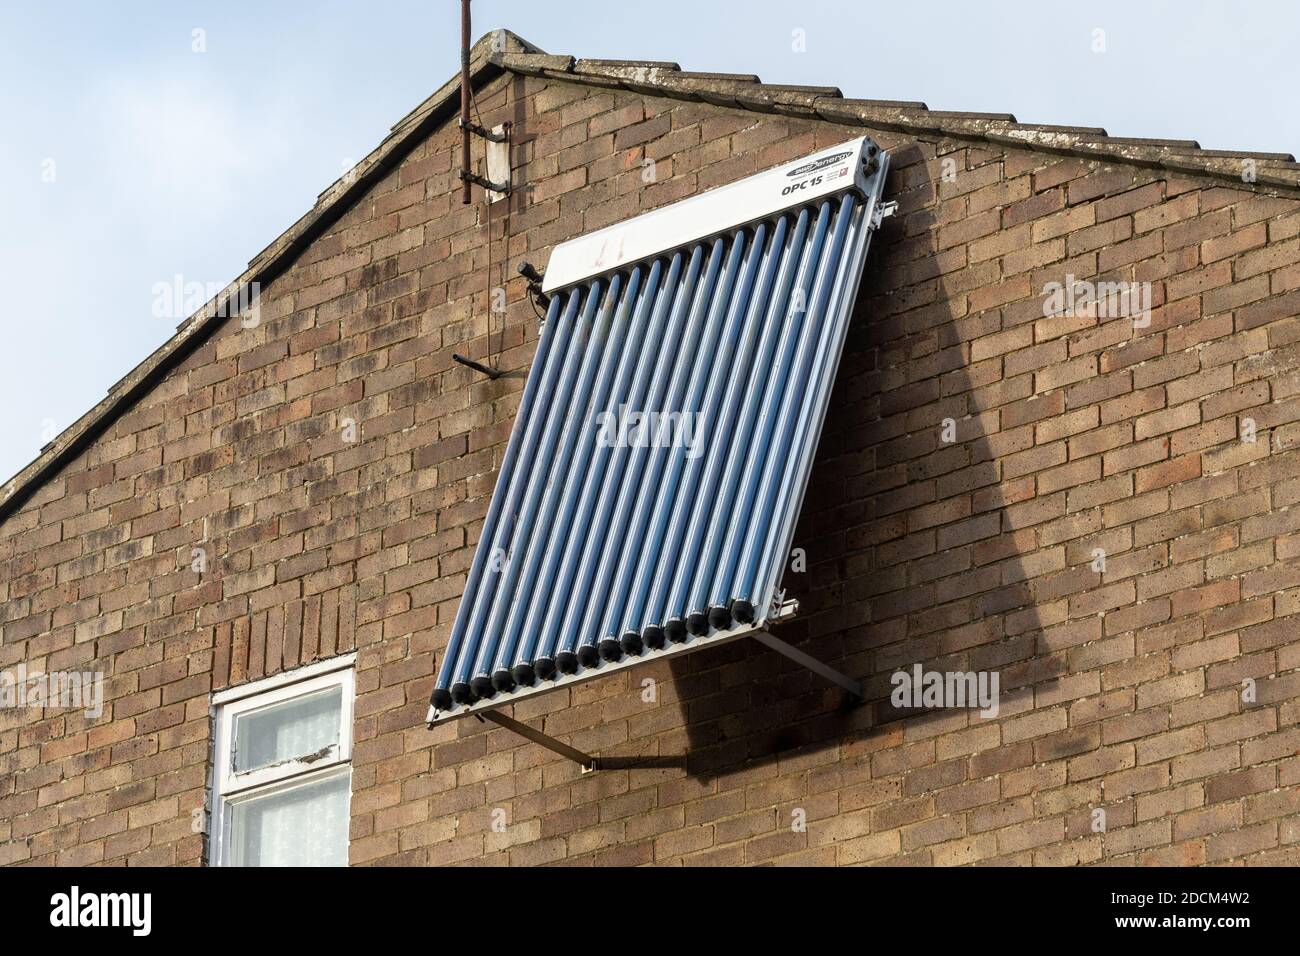 Ein solarthermisches Panel, evakuierte Röhre, OPC 15, montiert an der Wand eines Hauses, UK. Erneuerbare grüne nachhaltige Energie für das Haus. Stockfoto